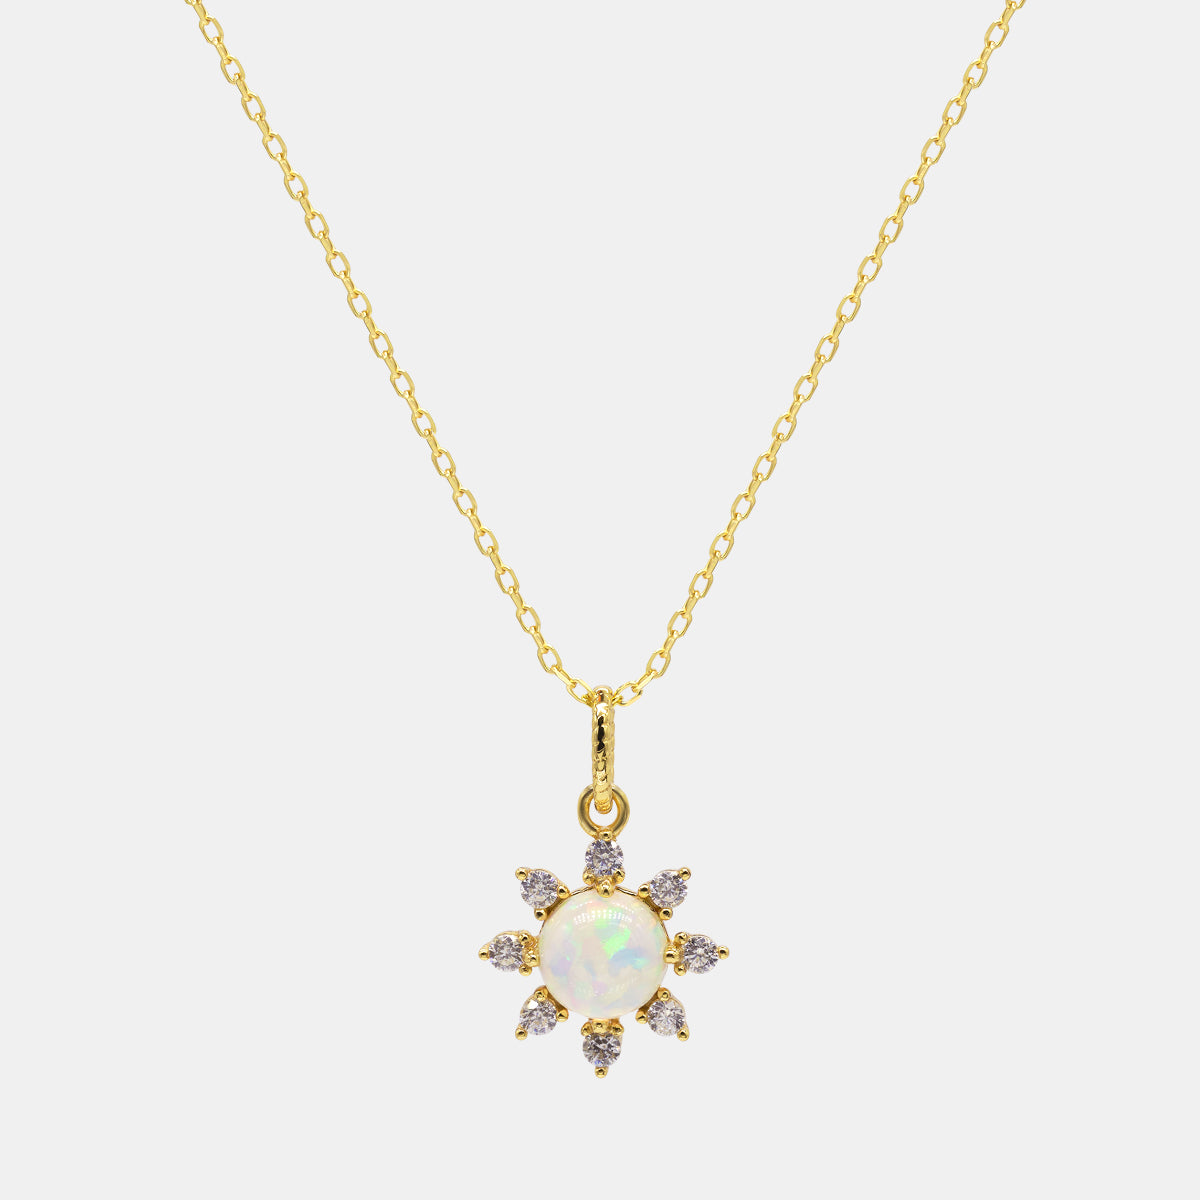 【768】Sunburst Opal Necklace